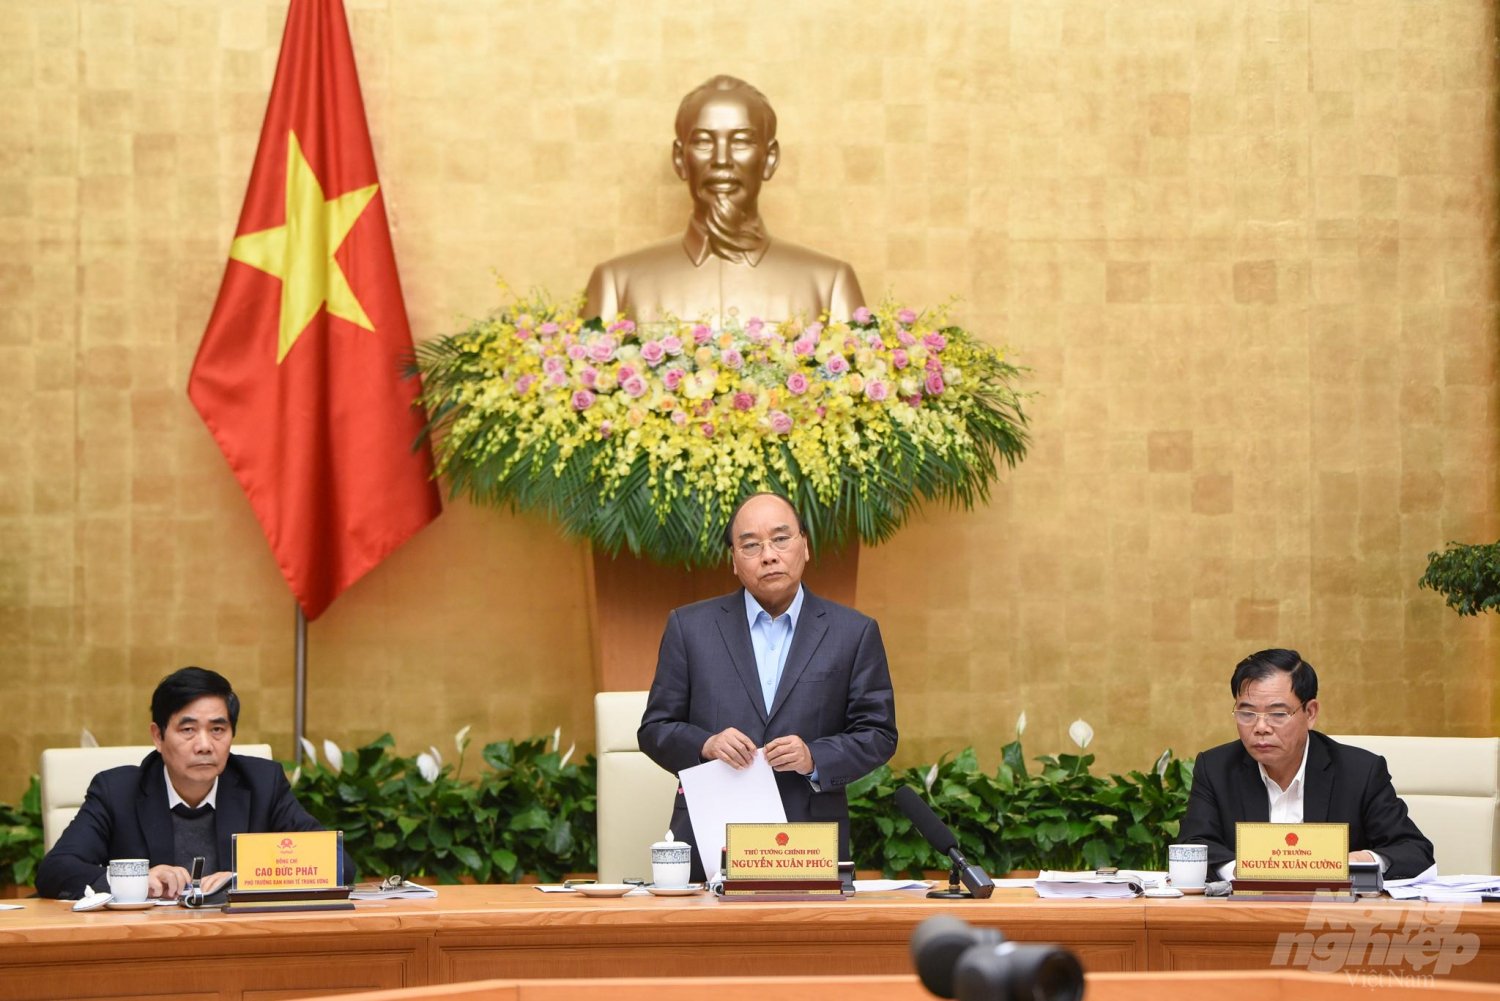 Thủ tướng Nguyễn Xuân Phúc khẳng định nông sản muốn ra siêu thị lớn phải có vùng nguyên liệu. Ảnh: Tùng Đinh.